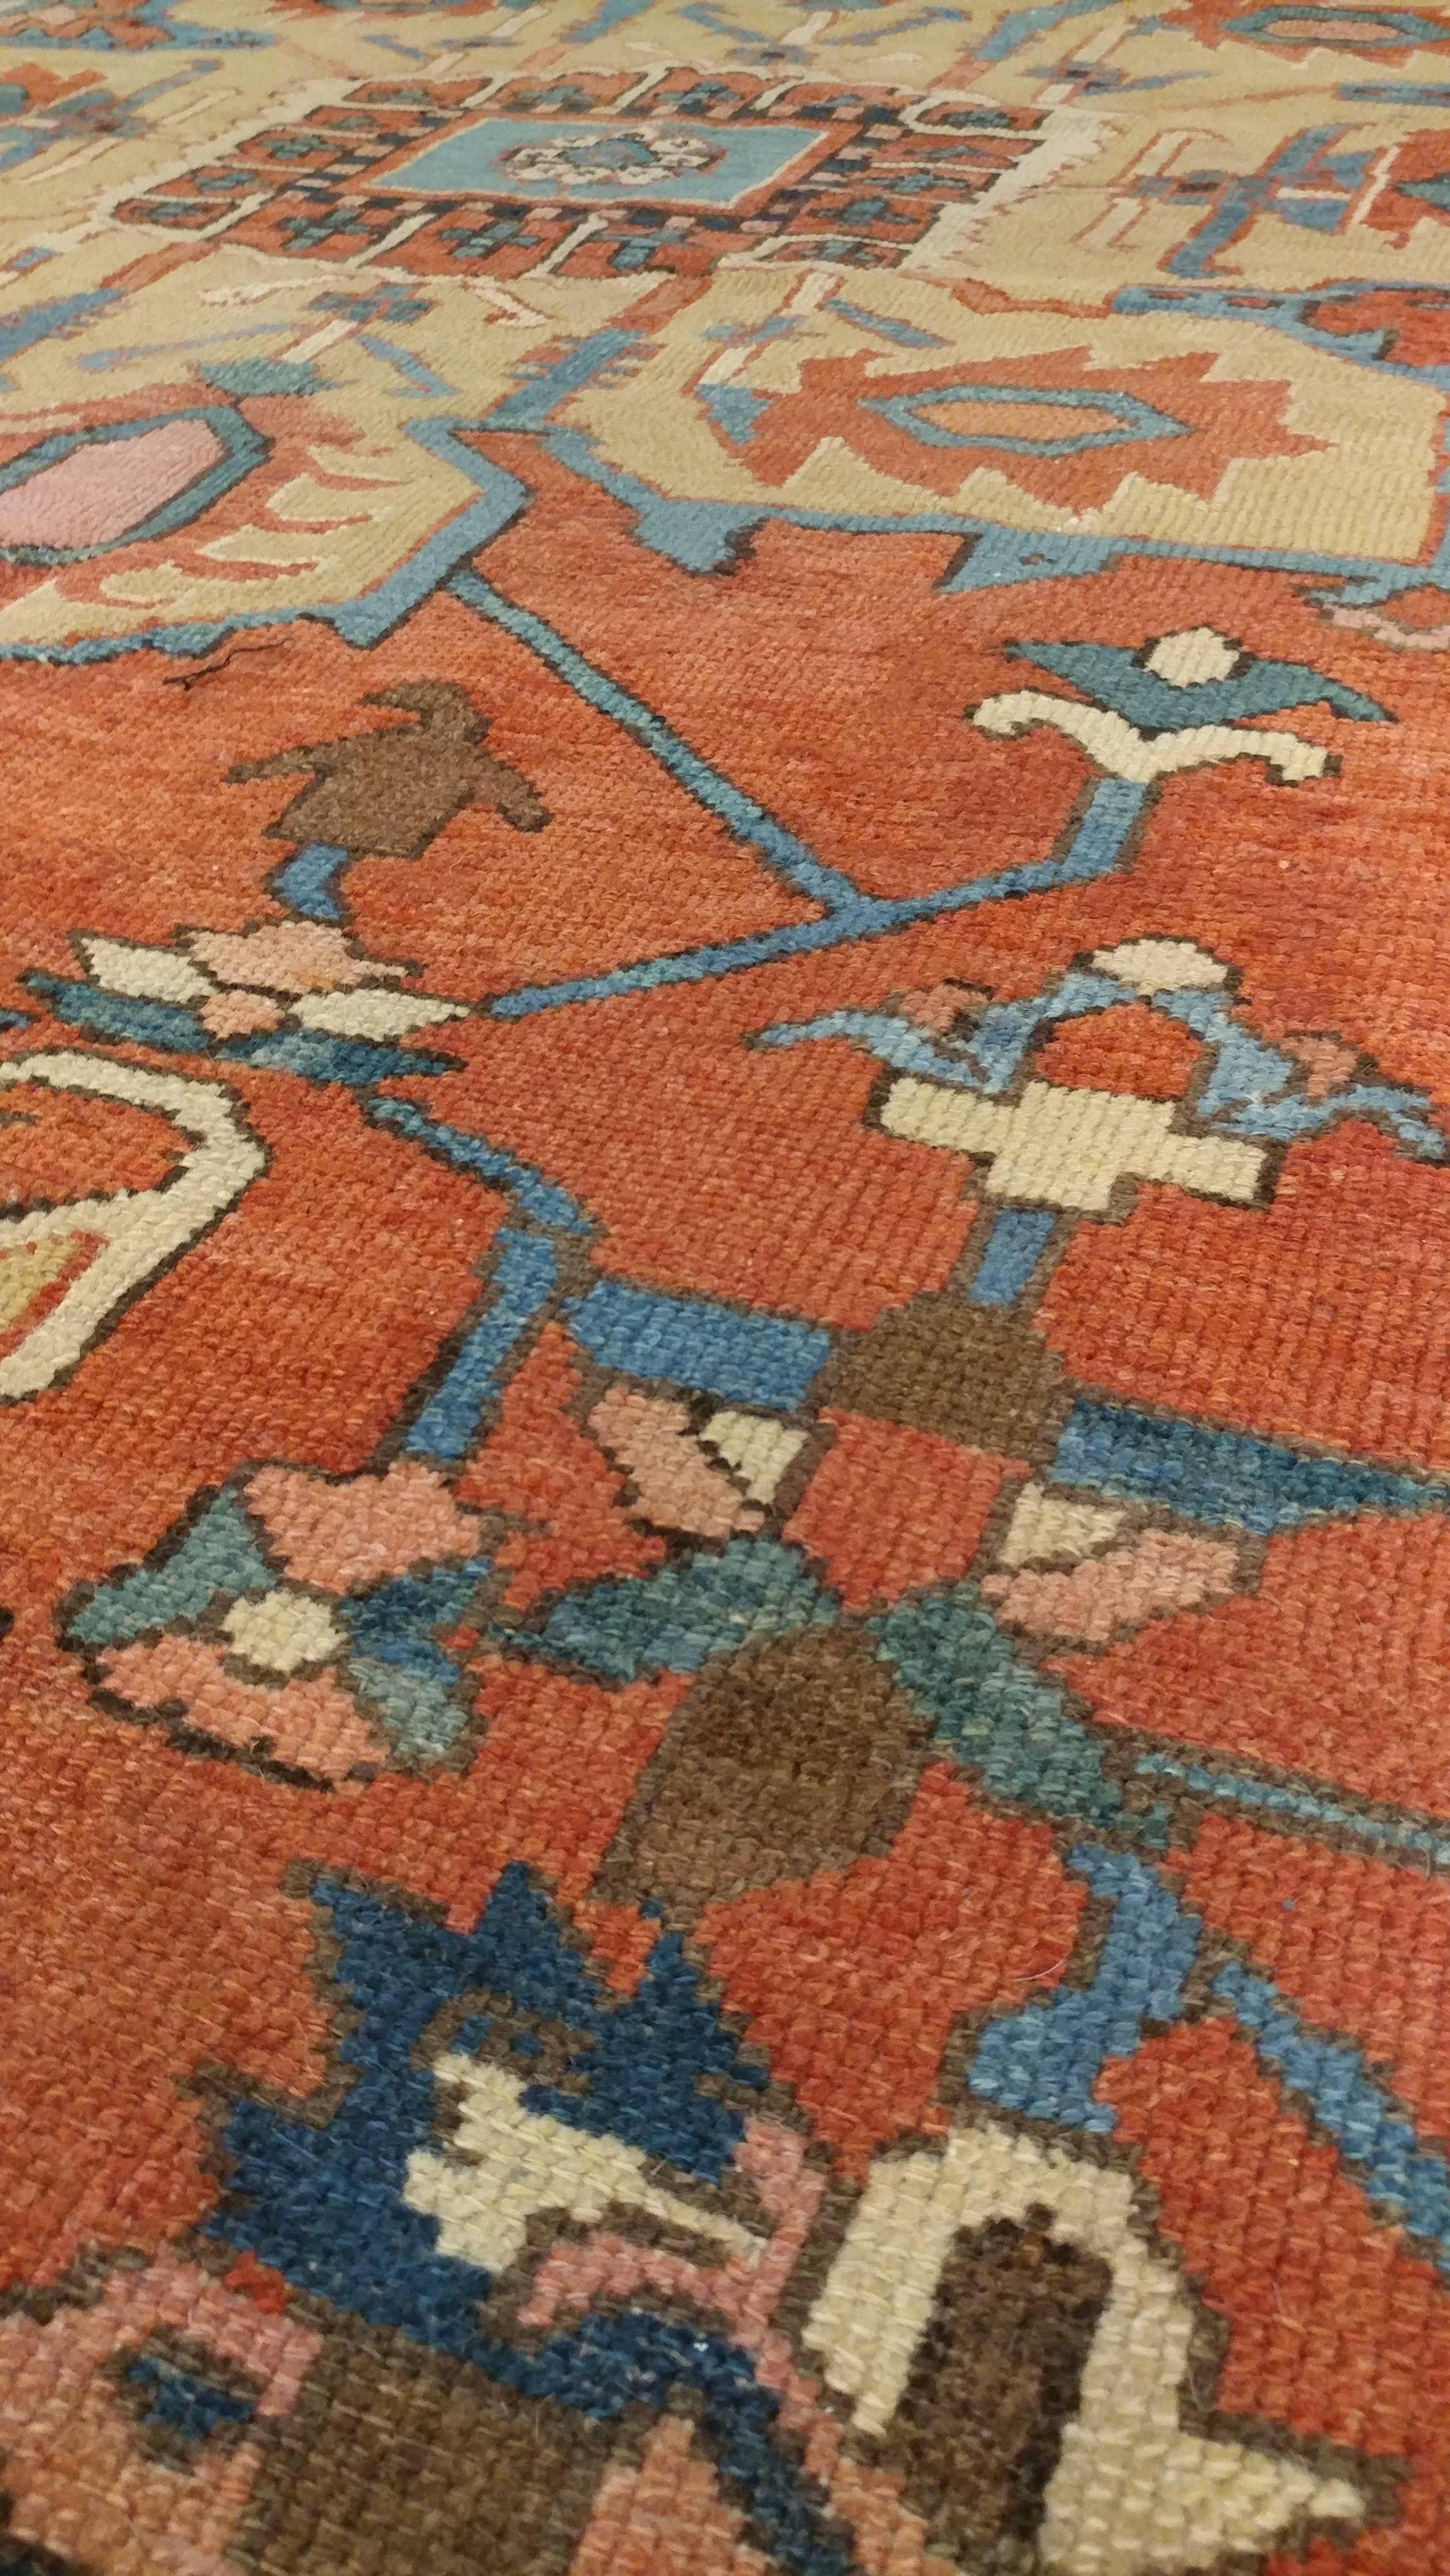 Antique Persian Handmade Wool Oriental Serapi Carpet, Rust, Gold, Light Blue 1